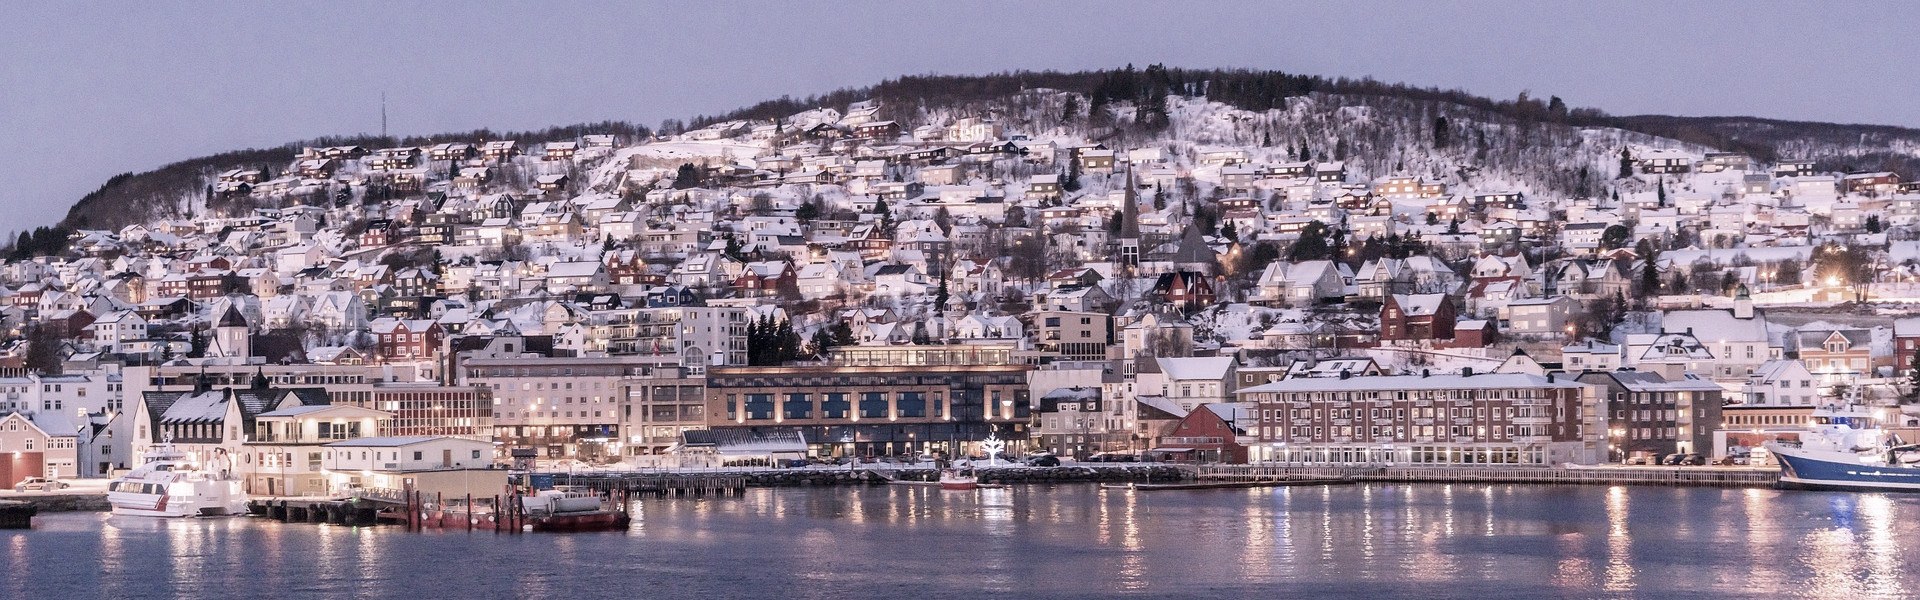 Town_in_Norway.jpg